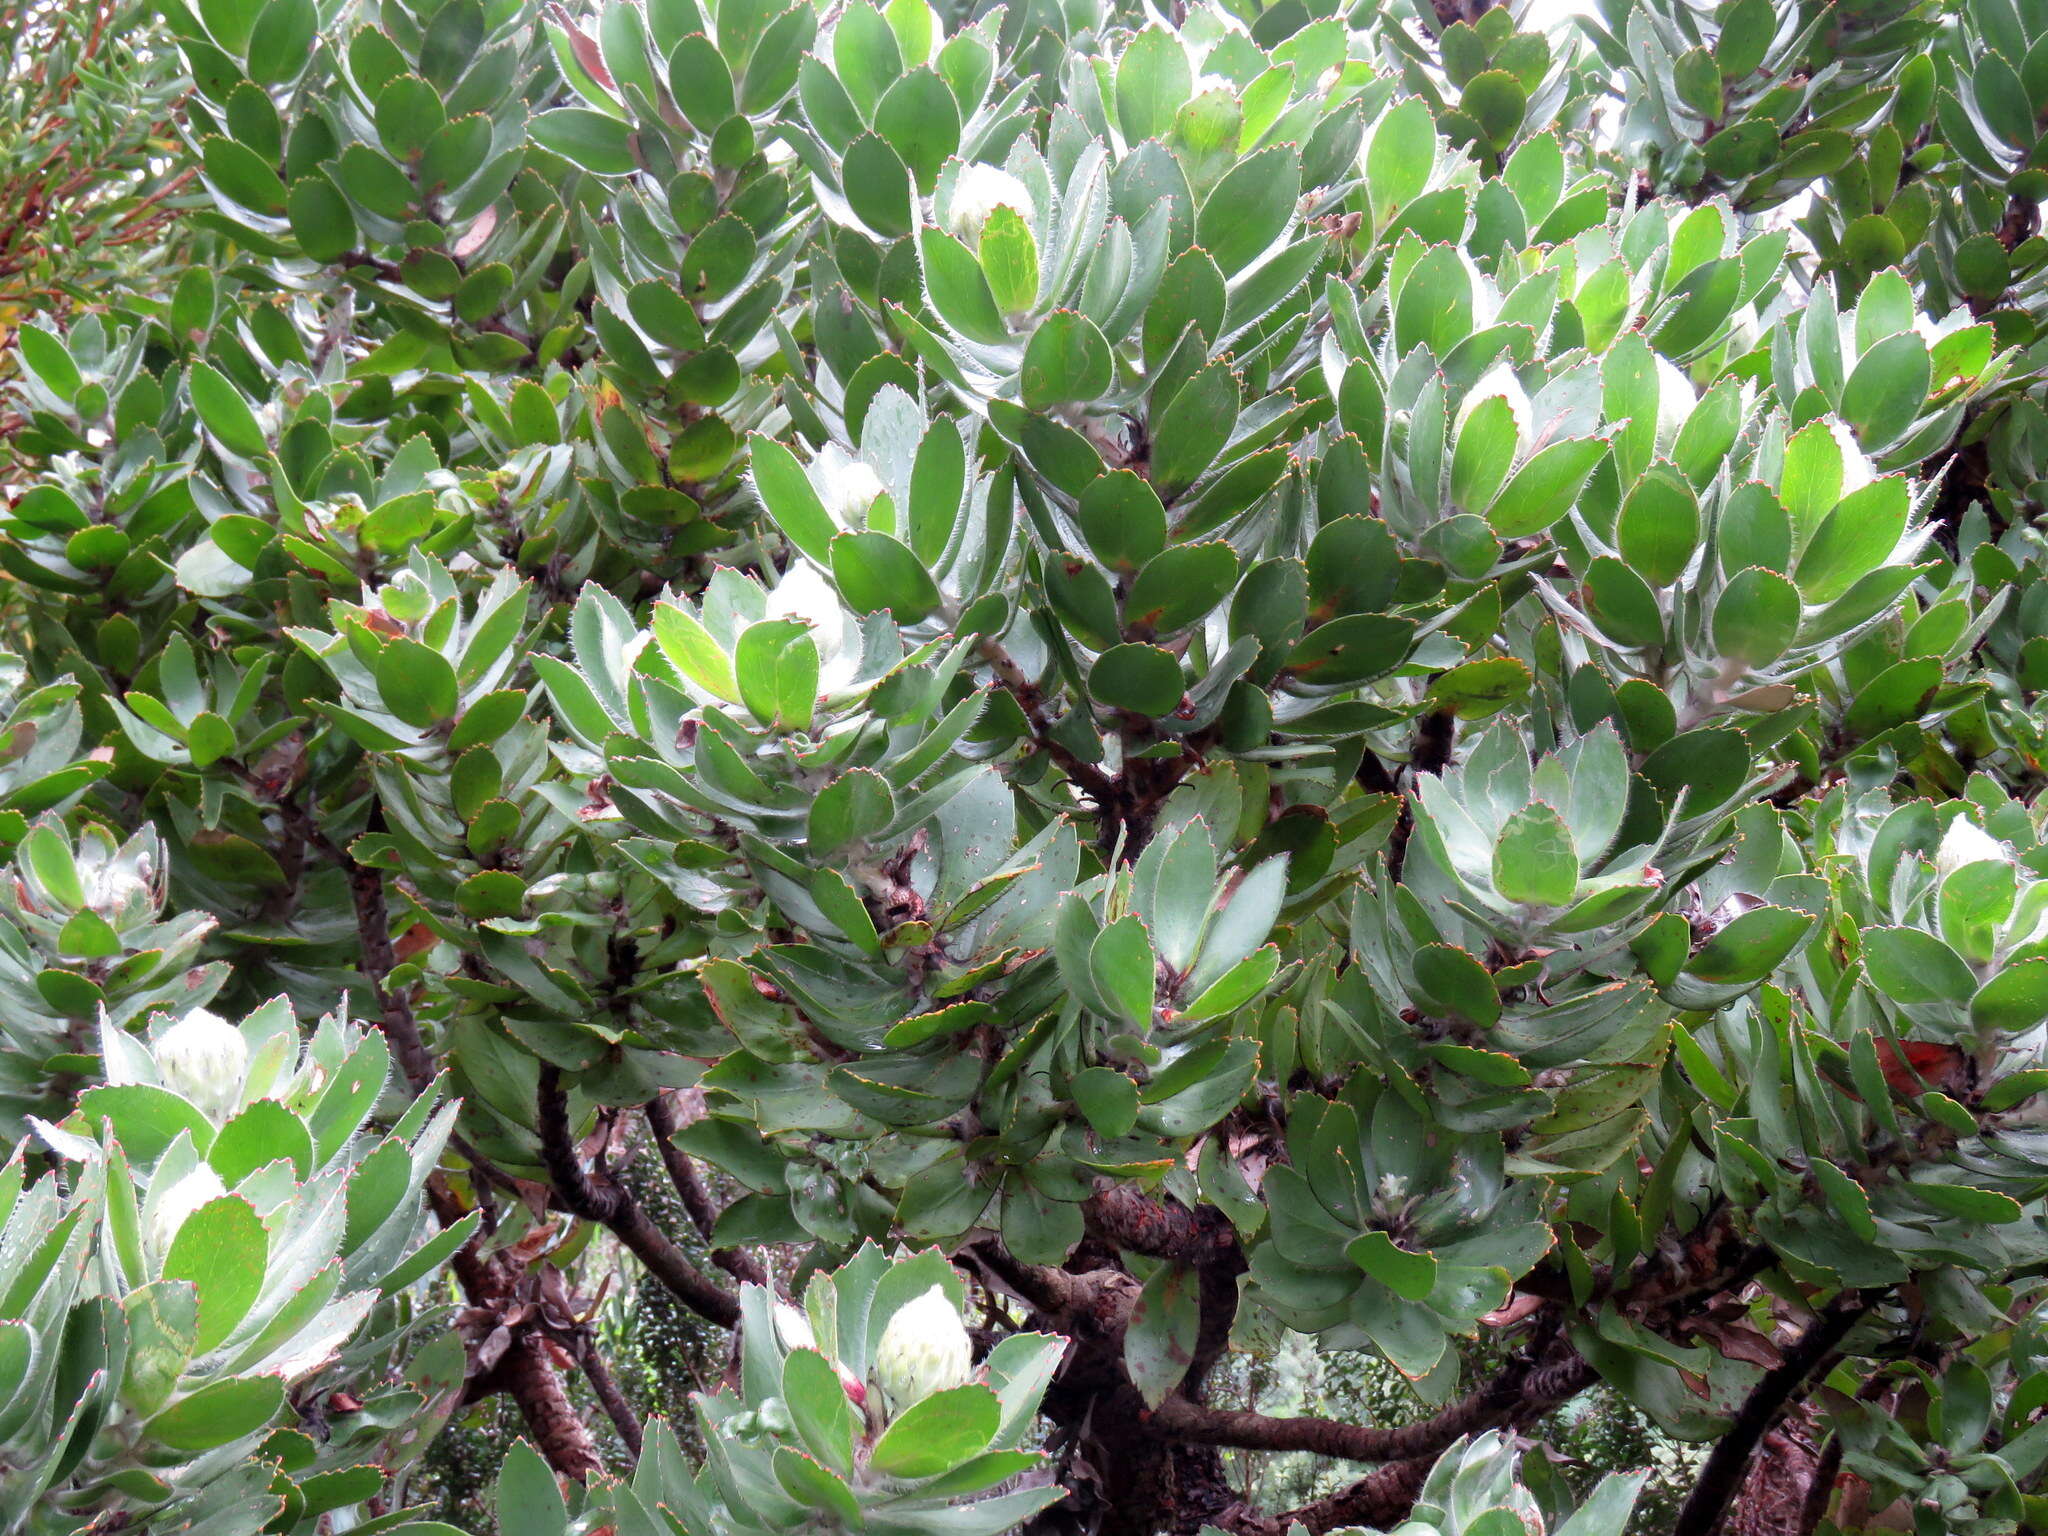 Image of Leucospermum conocarpodendron subsp. viridum Rourke